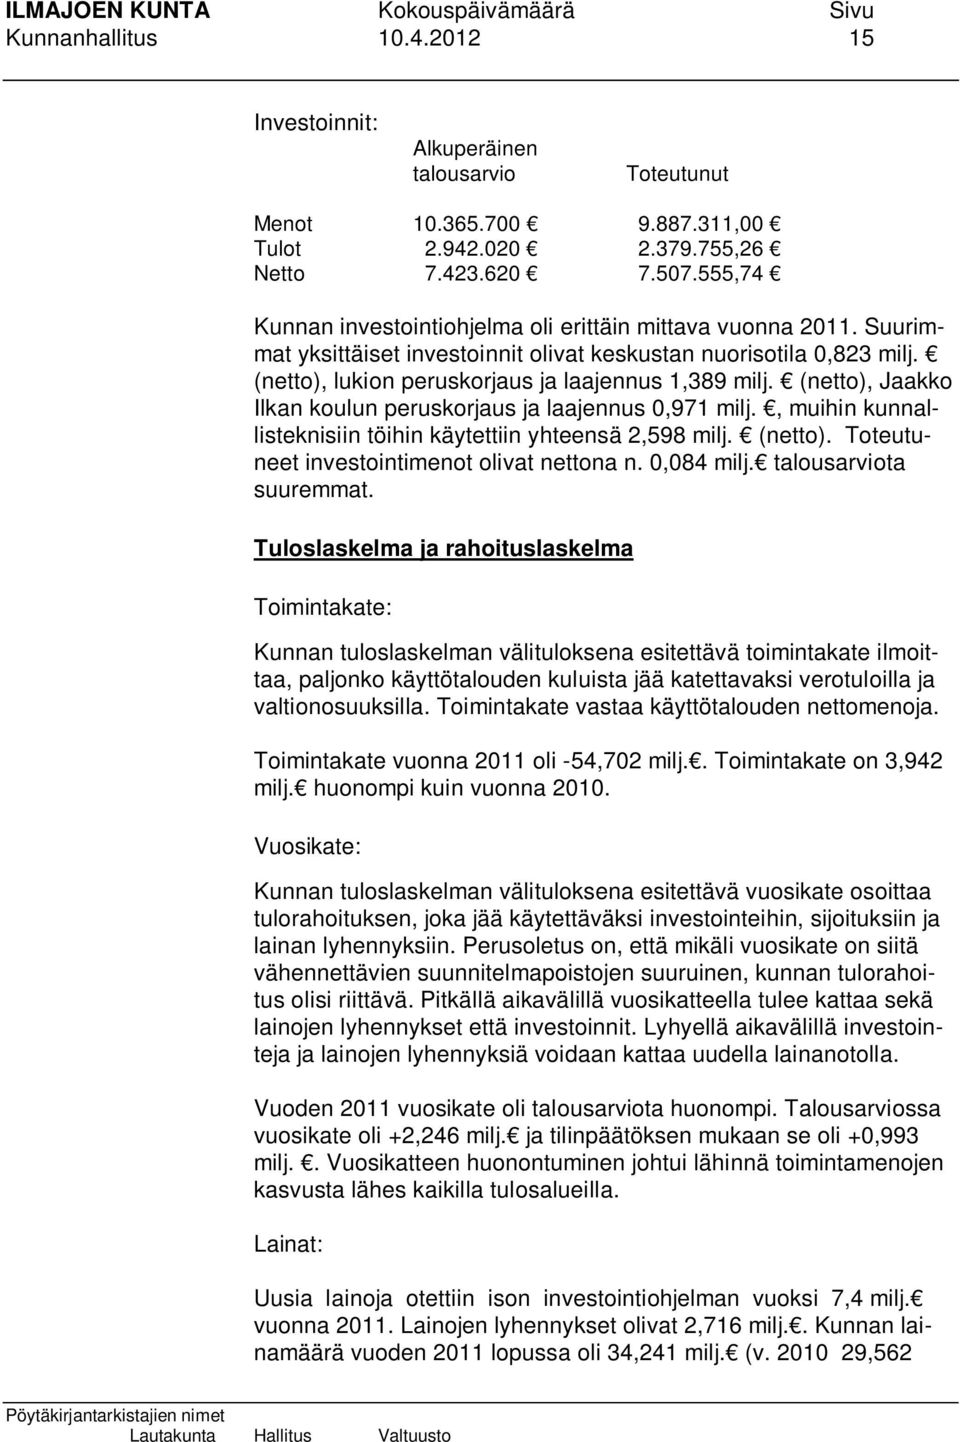 (netto), Jaakko Ilkan koulun peruskorjaus ja laajennus 0,971 milj., muihin kunnallisteknisiin töihin käytettiin yhteensä 2,598 milj. (netto). Toteutuneet investointimenot olivat nettona n. 0,084 milj.